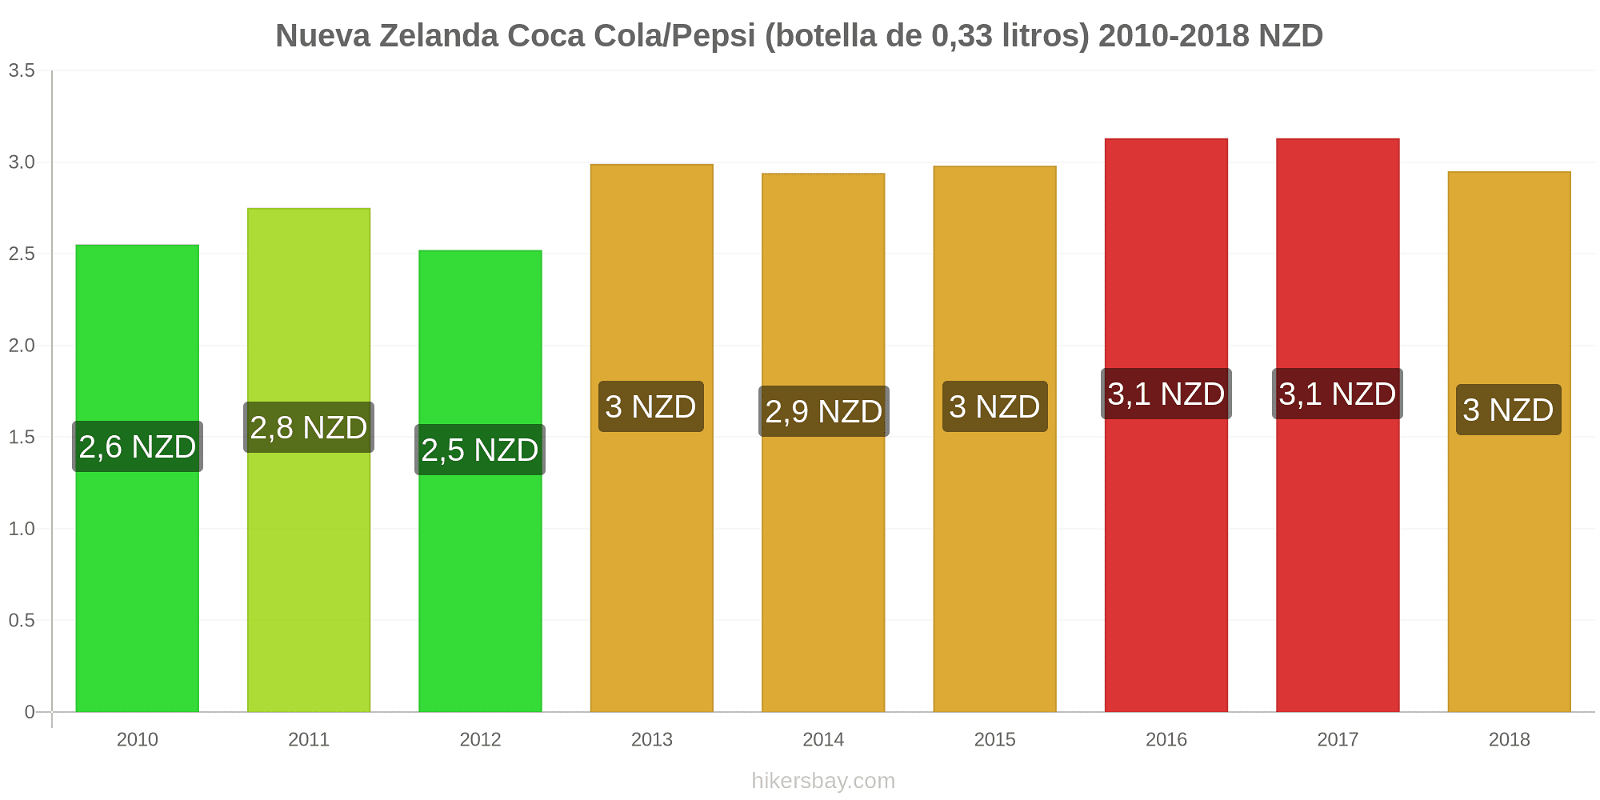 Nueva Zelanda cambios de precios Coca-Cola/Pepsi (botella de 0.33 litros) hikersbay.com